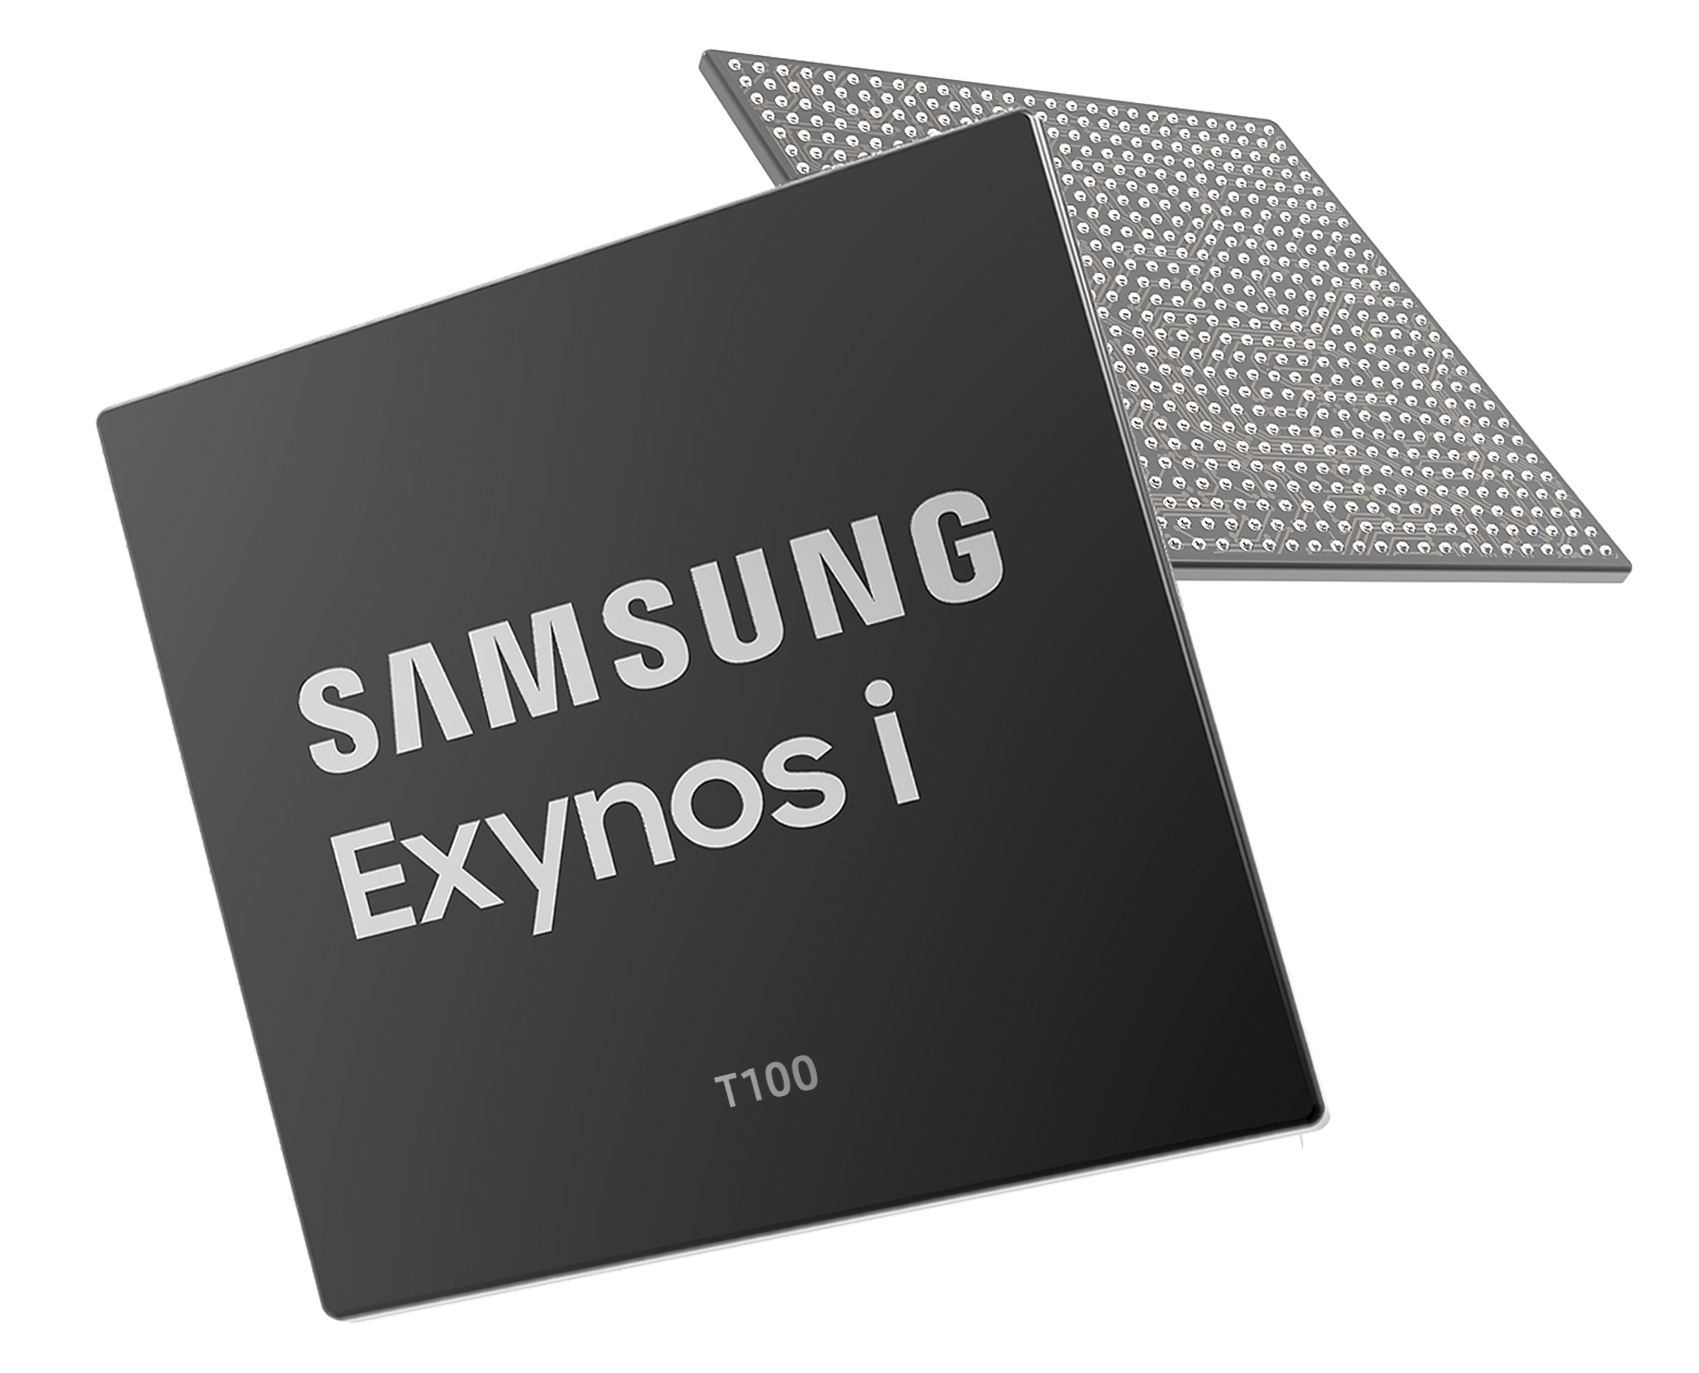 Samsung Exynos i T100